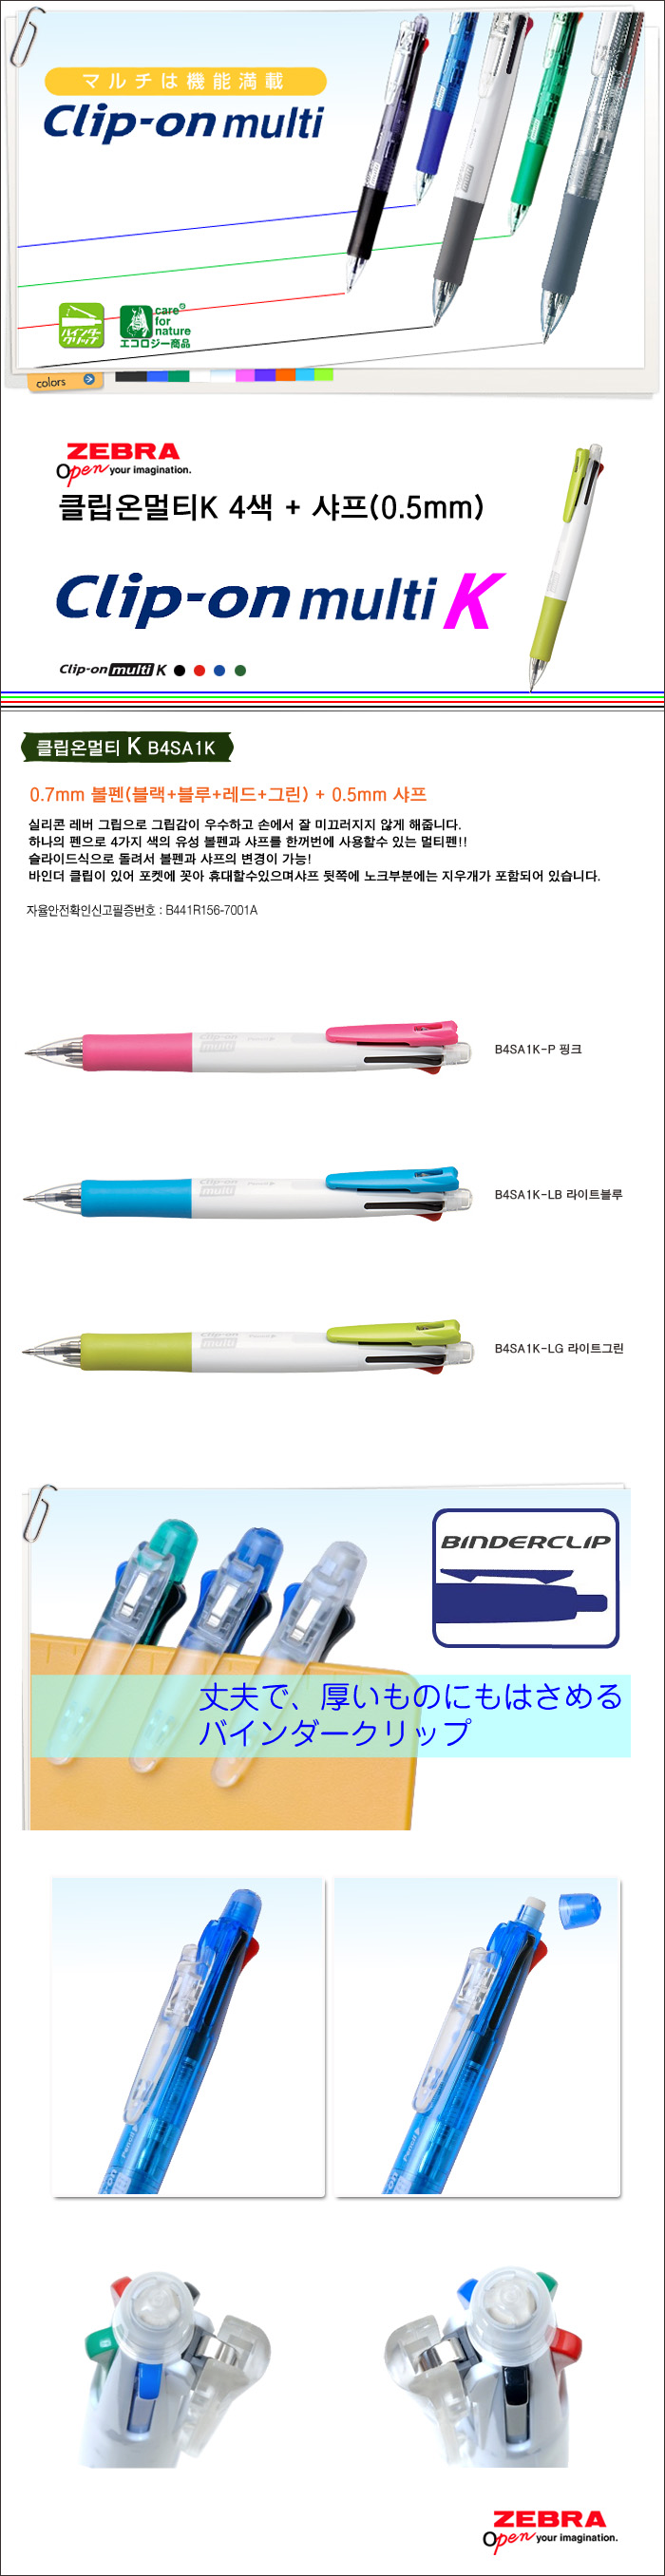 ZEBRA/Clip-on mulit K (B4SA1K)/4 color pen